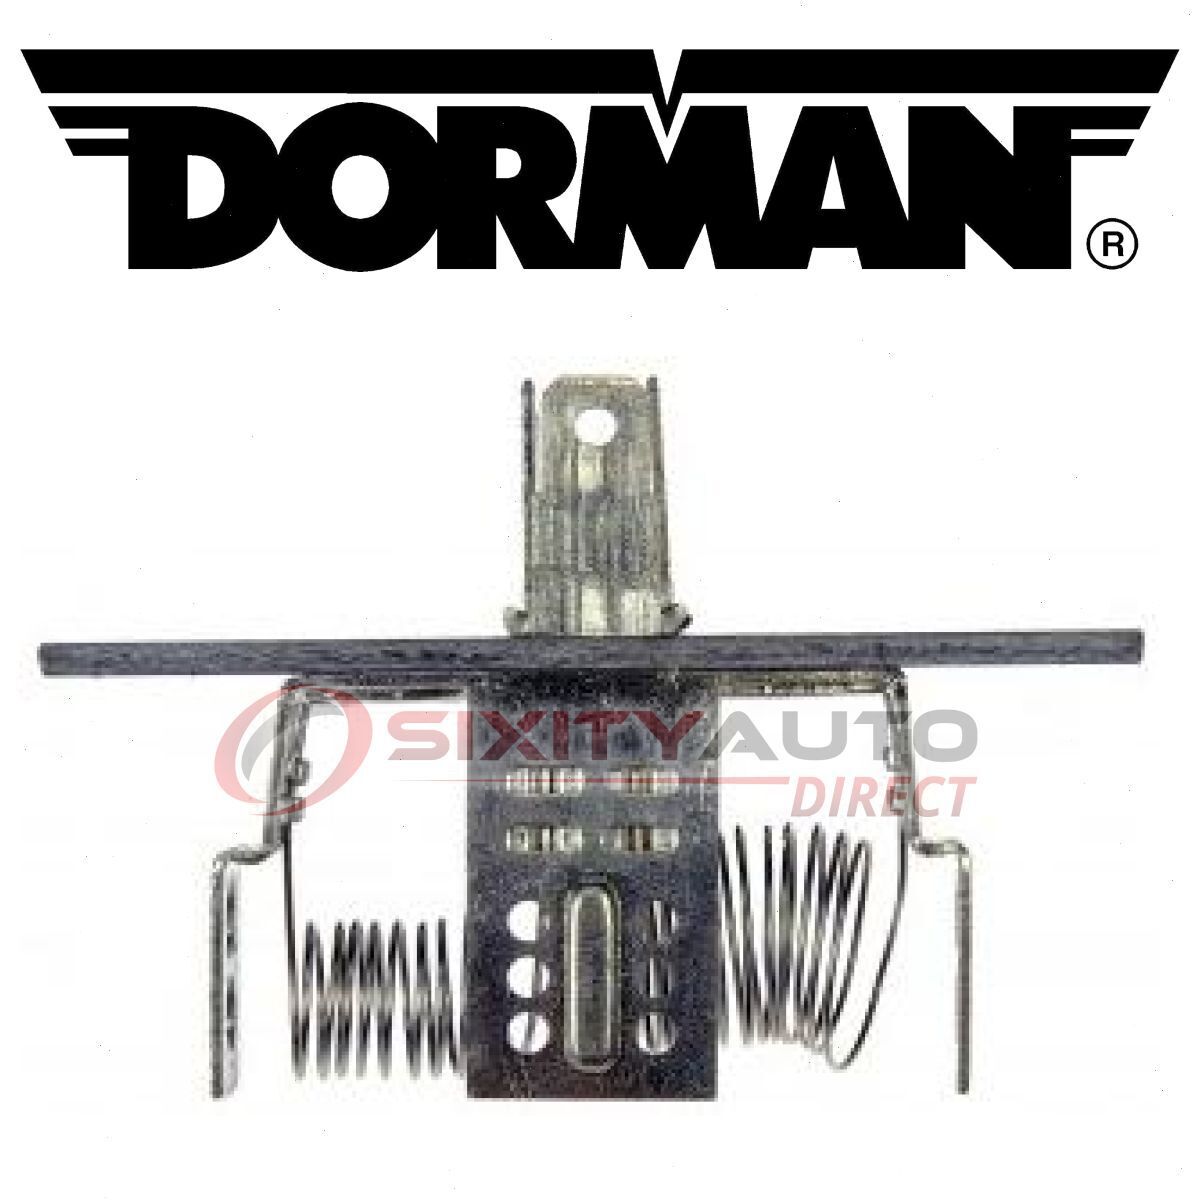 Dorman HVAC Blower Motor Resistor Kit for 1976-1987 Oldsmobile Cutlass nr